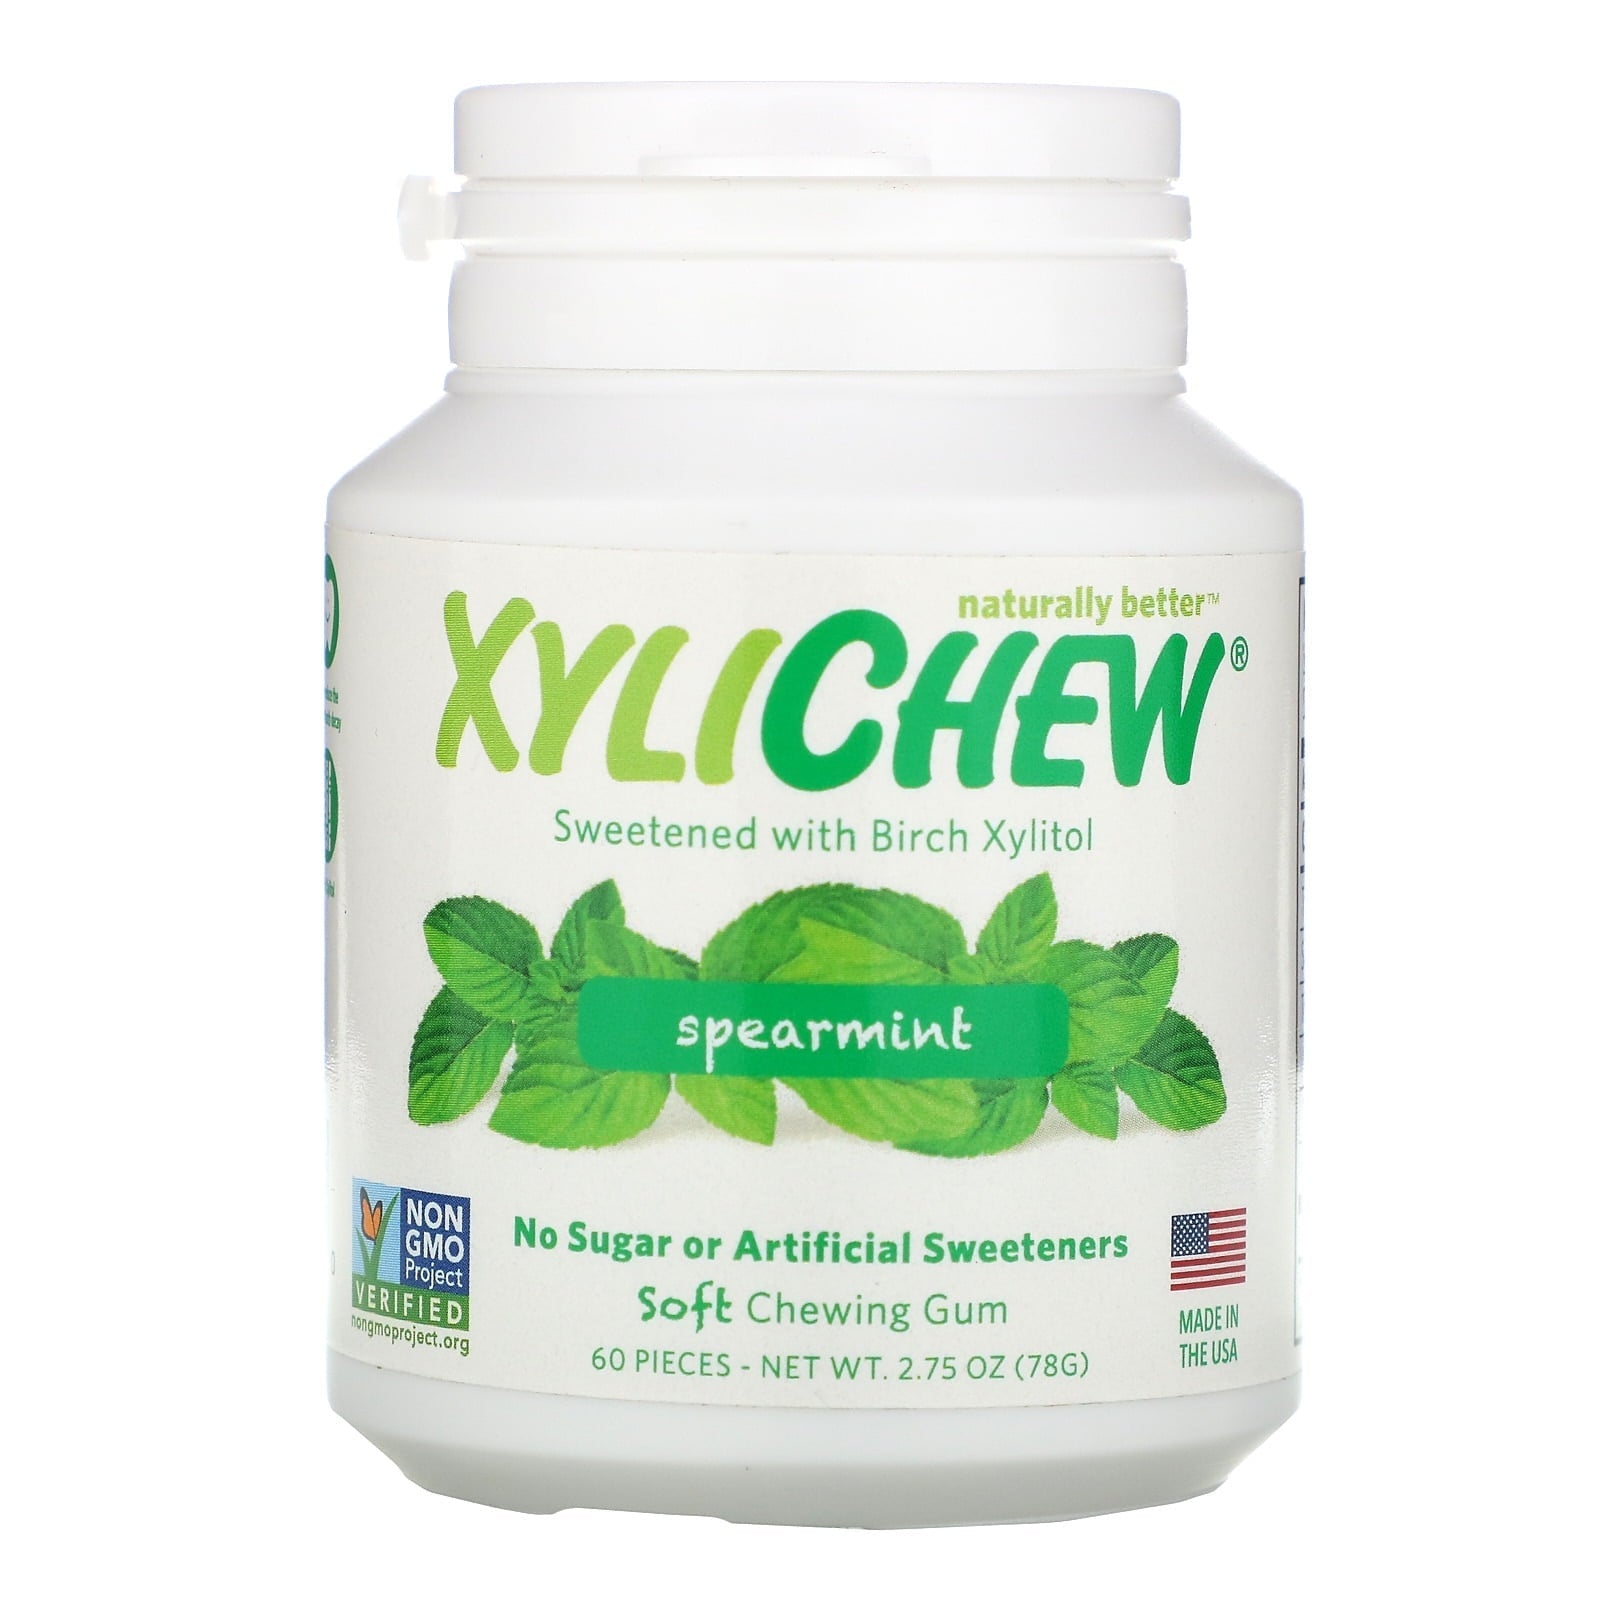 Xylichew Gum Cheweing Gum Spearmint 2.75 oz